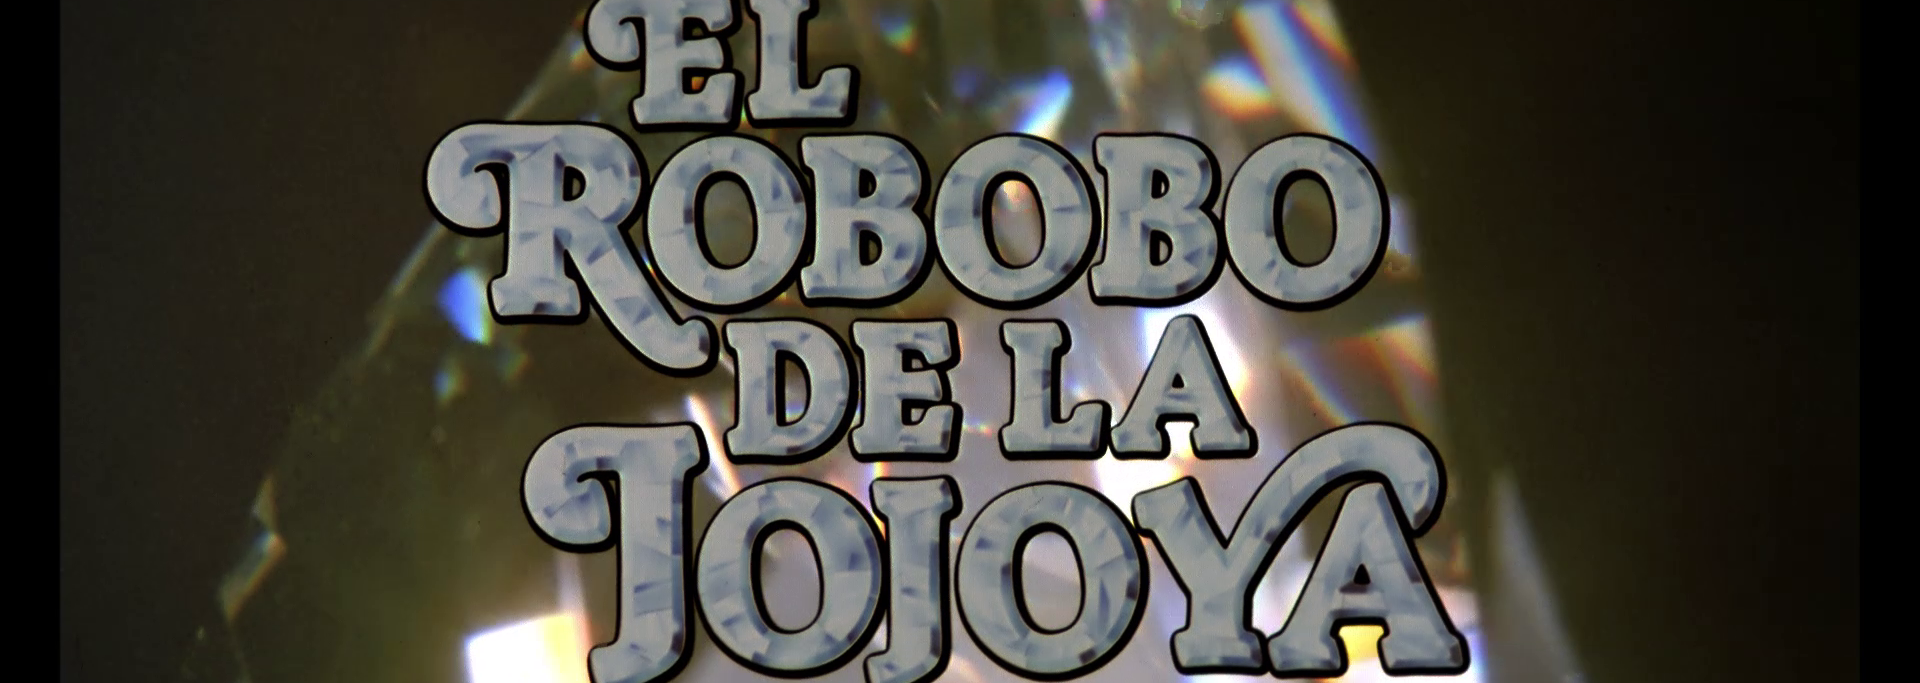 El Robobo De La Jojoya 